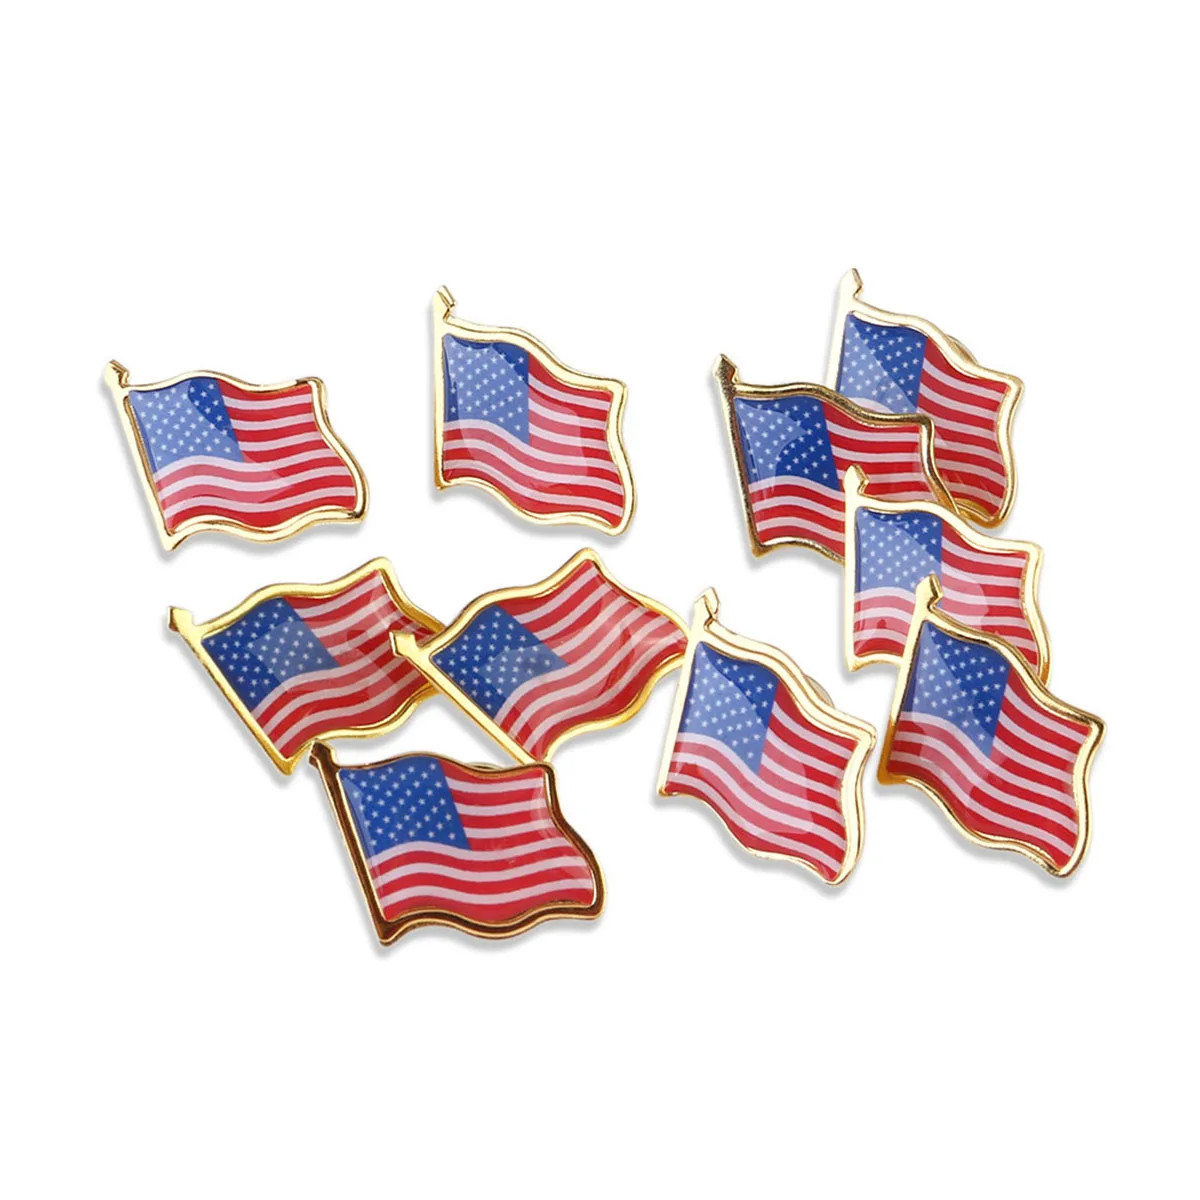 PIXNOR 10 шт./компл. Американский Нагрудный значок с флагом США шляпа держатель галстука значок шпильки Мини Броши для одежды сумки украшения